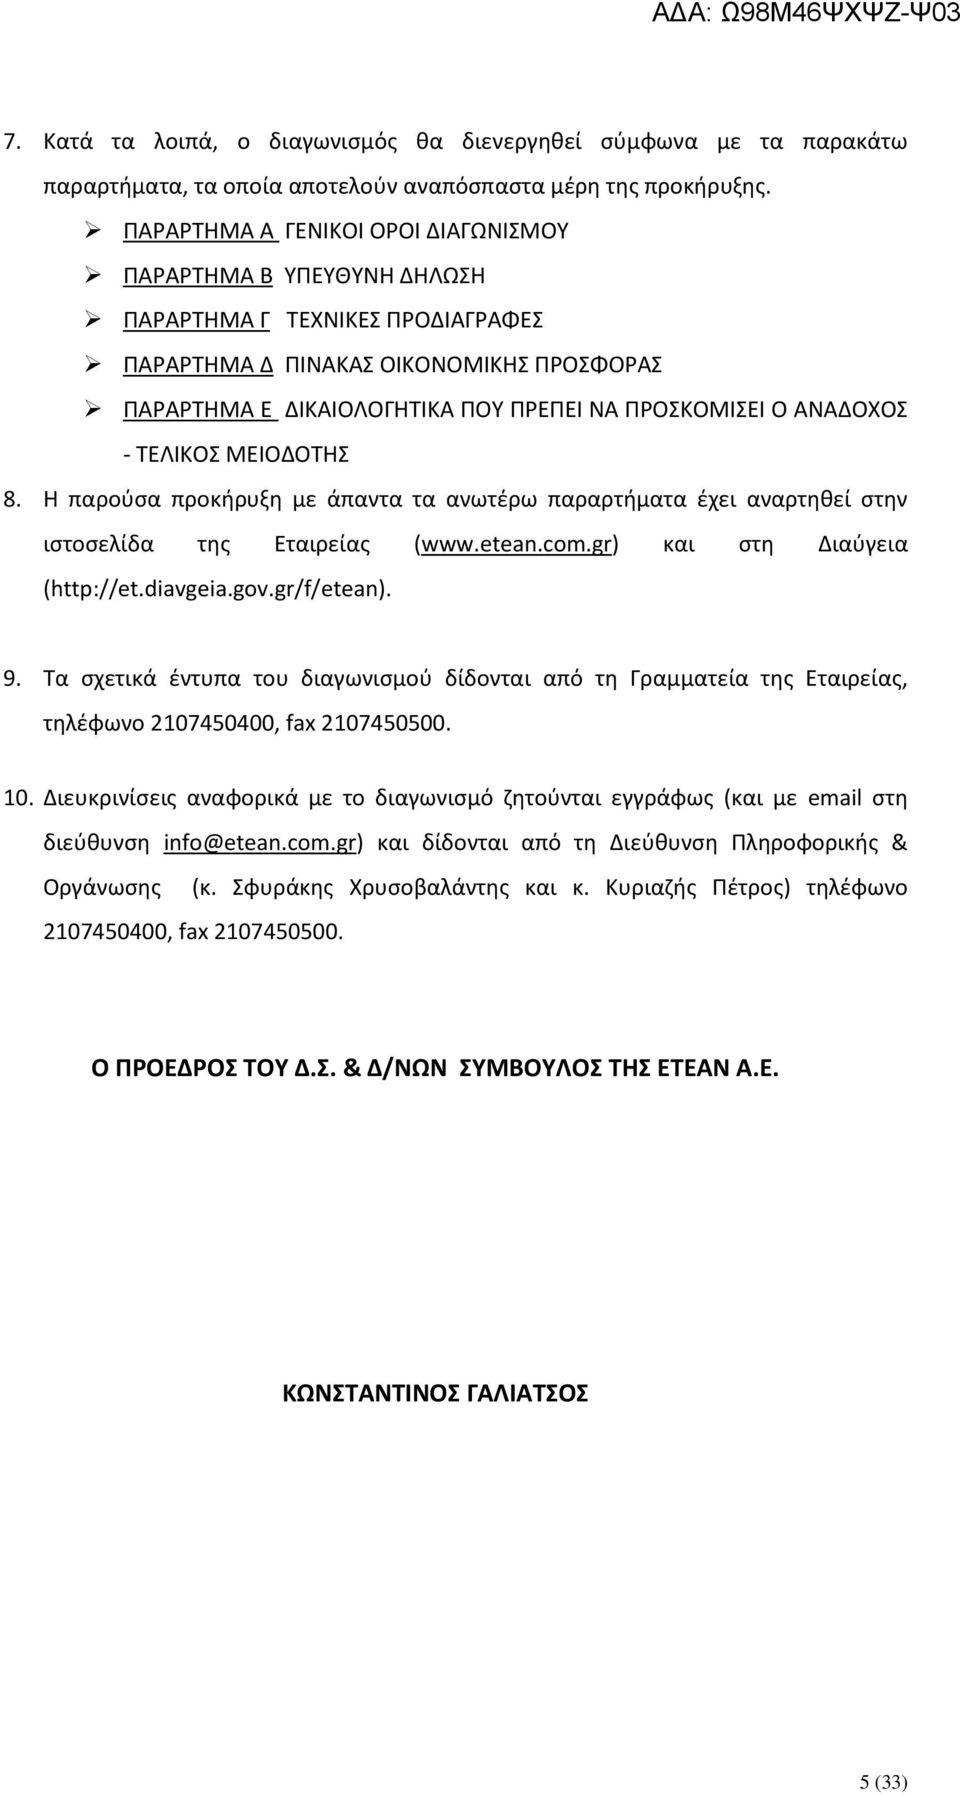 ΑΝΑΔΟΧΟΣ - ΤΕΛΙΚΟΣ ΜΕΙΟΔΟΤΗΣ 8. Η παρούσα προκήρυξη με άπαντα τα ανωτέρω παραρτήματα έχει αναρτηθεί στην ιστοσελίδα της Εταιρείας (www.etean.com.gr) και στη Διαύγεια (http://et.diavgeia.gov.